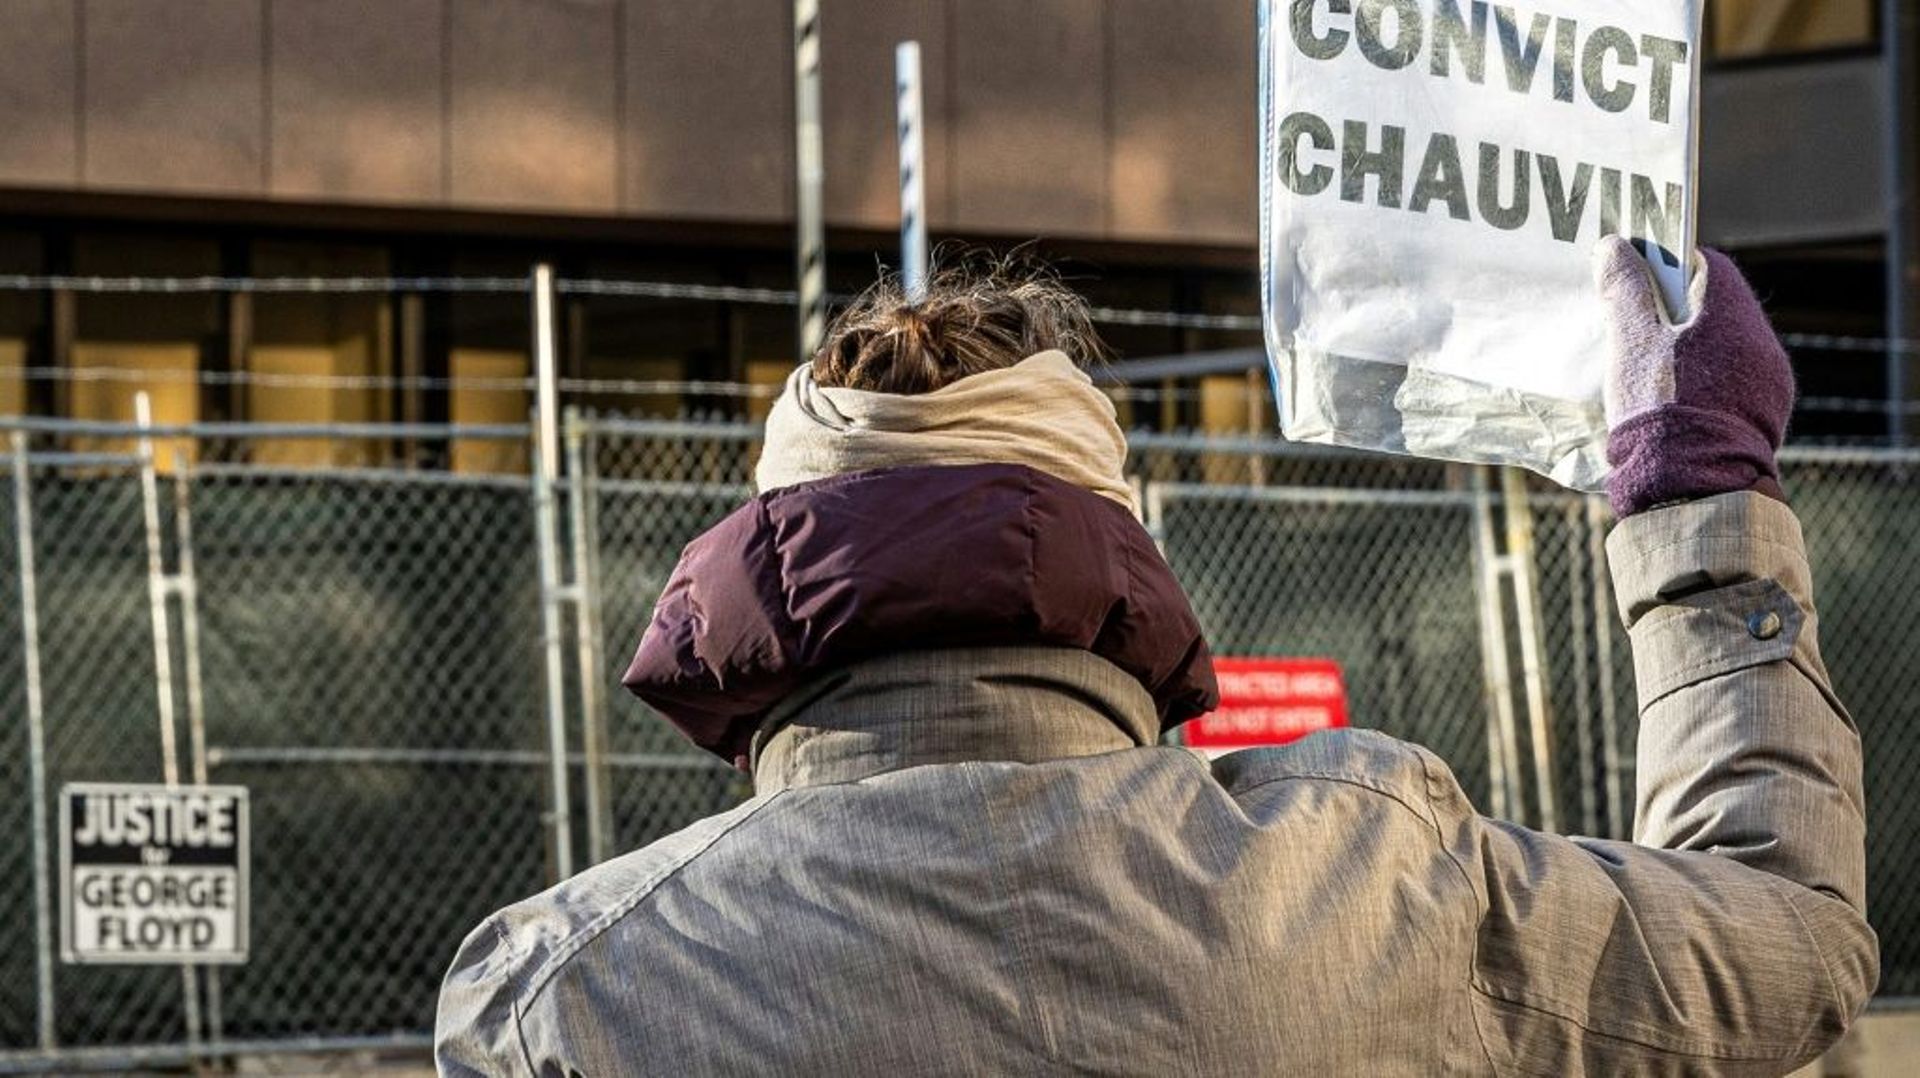 Une femme tient une pancarte avec l'inscription "Condamnez Chauvin" à l'extérieur du tribunal où se tient le procès de l'ex-policier accusé de la mort de George Floyd, à Minneapolis (Etats-Unis), le 31 mars 2021